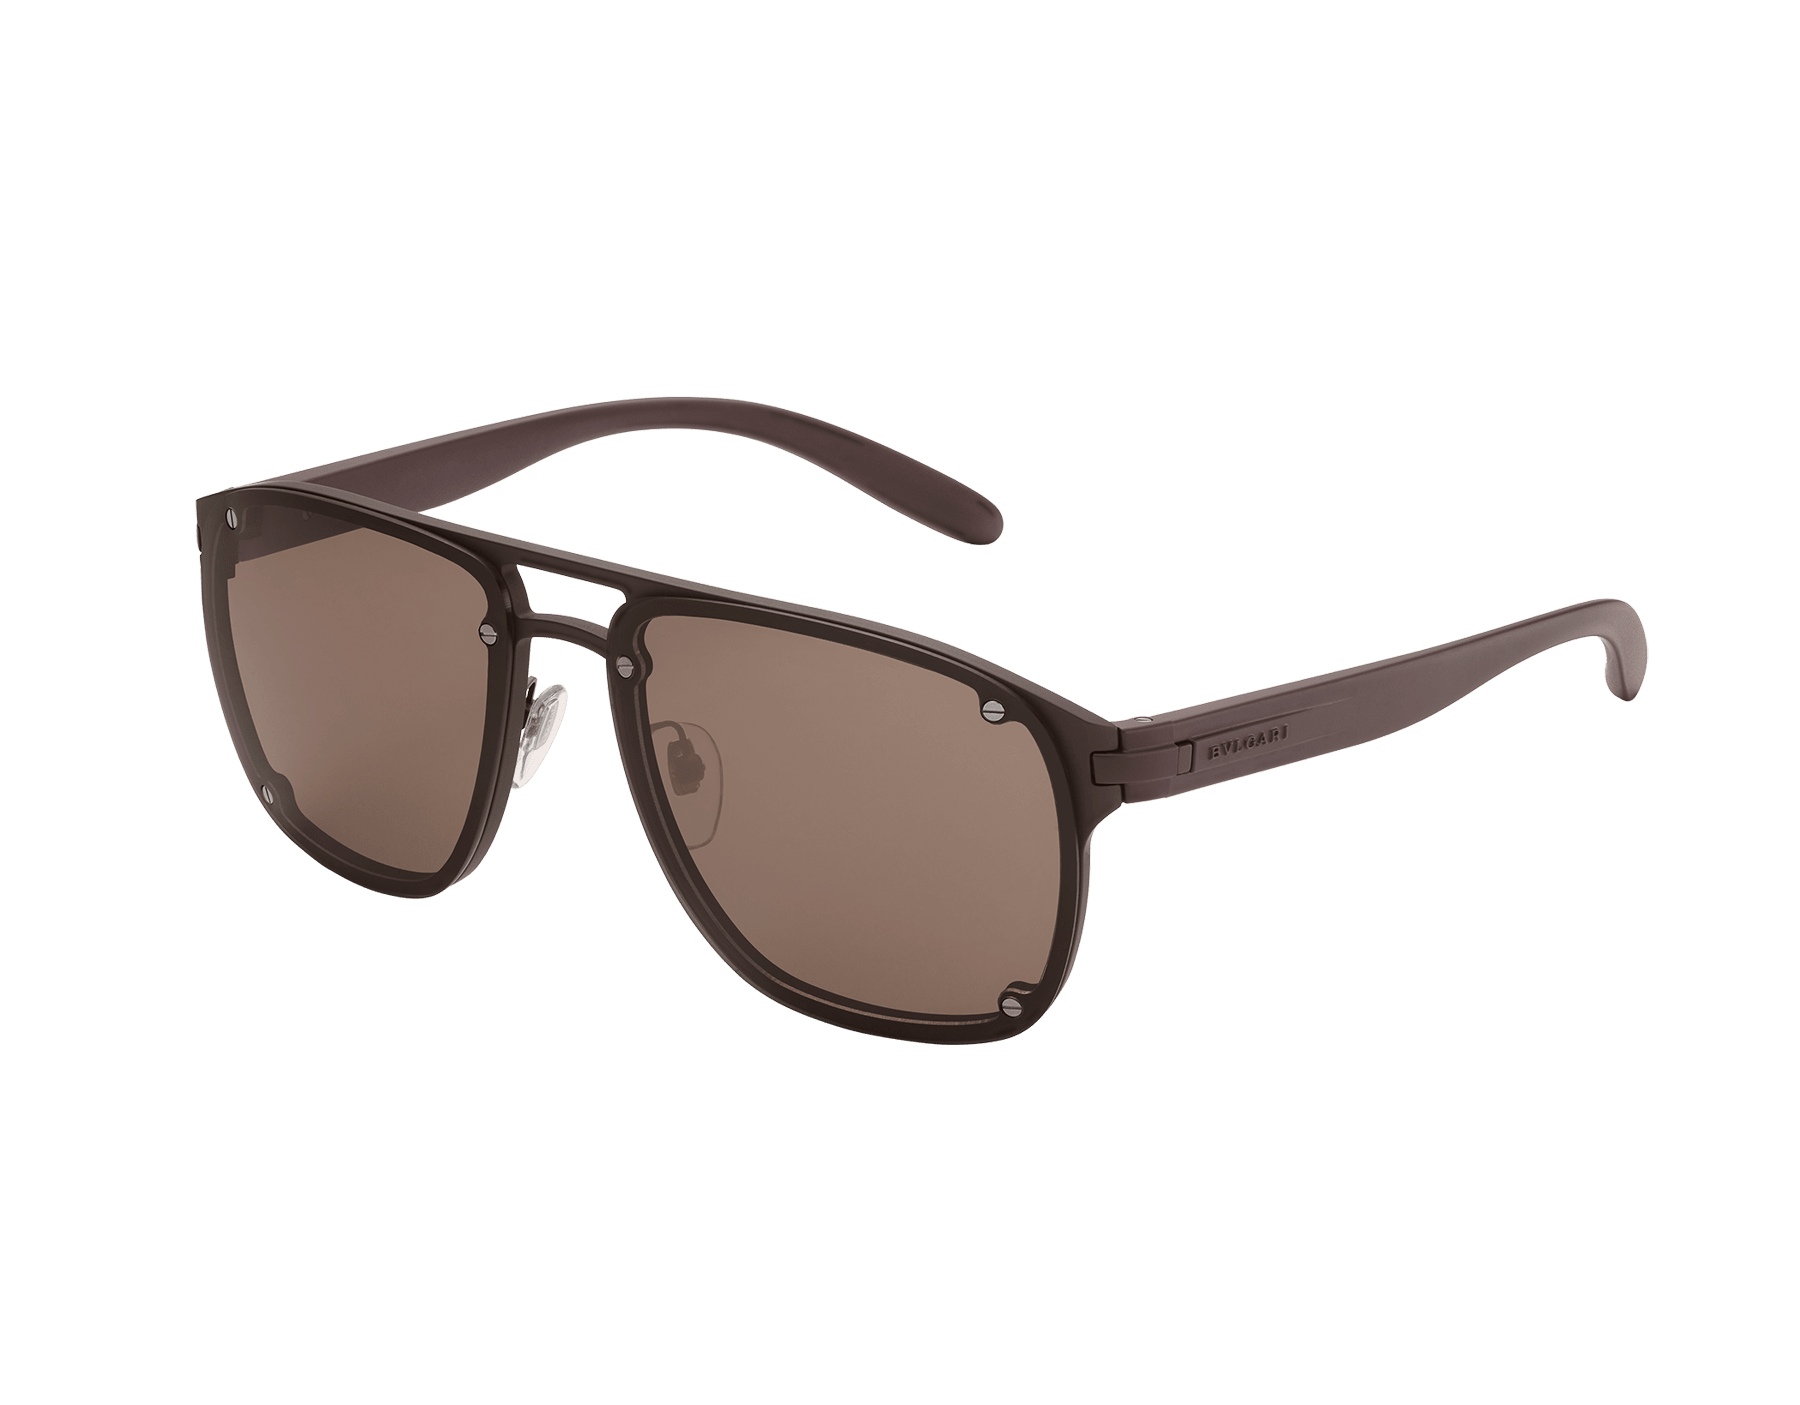 "Bvlgari Bvlgari Aluminium" rectangular sunglasses 904137 image 1